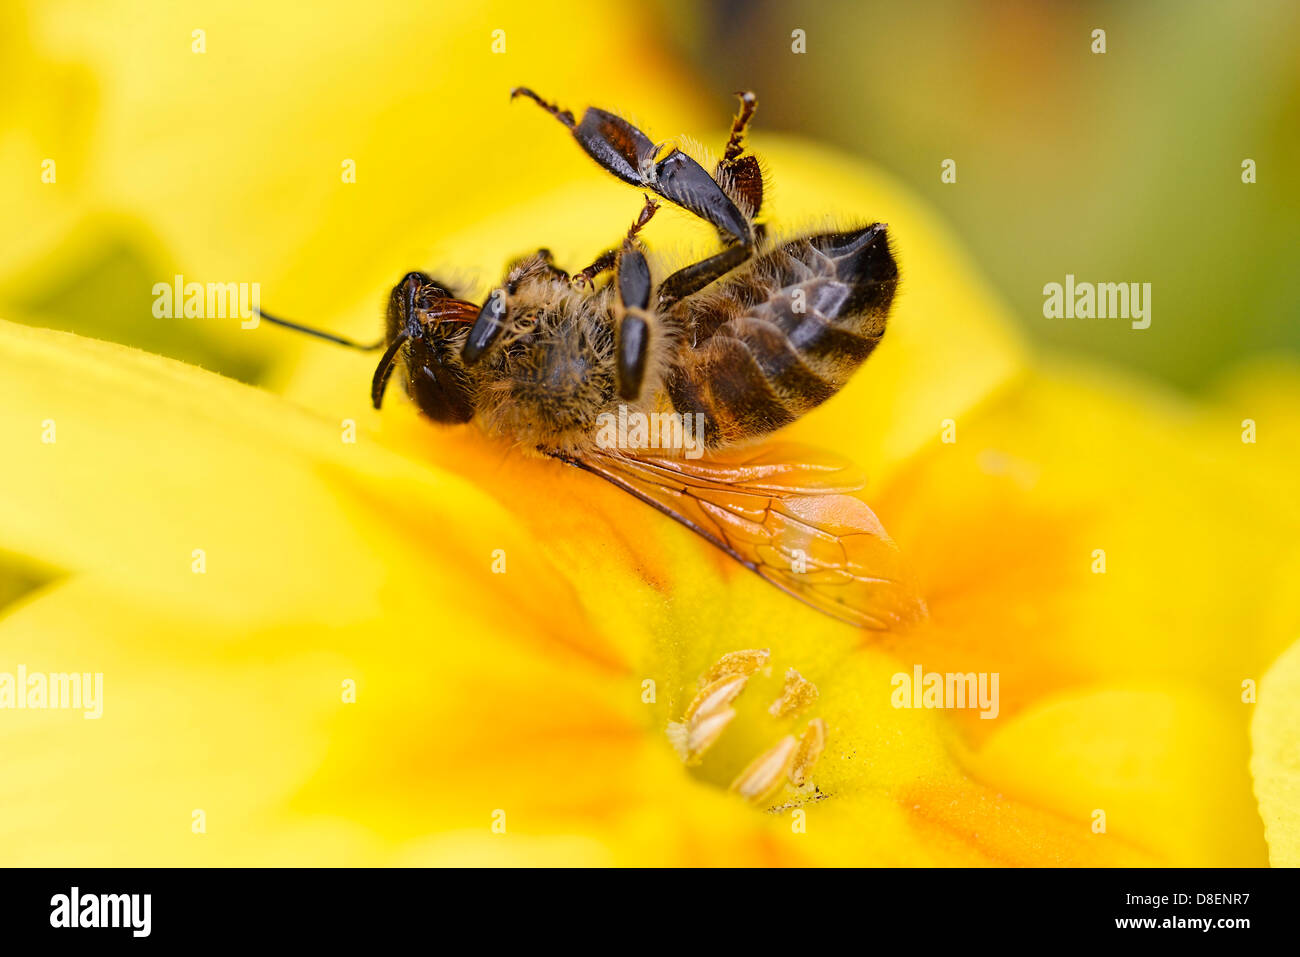 Muertos abeja de miel, Apis mellifera, sobre una flor, bee muertes Foto de stock